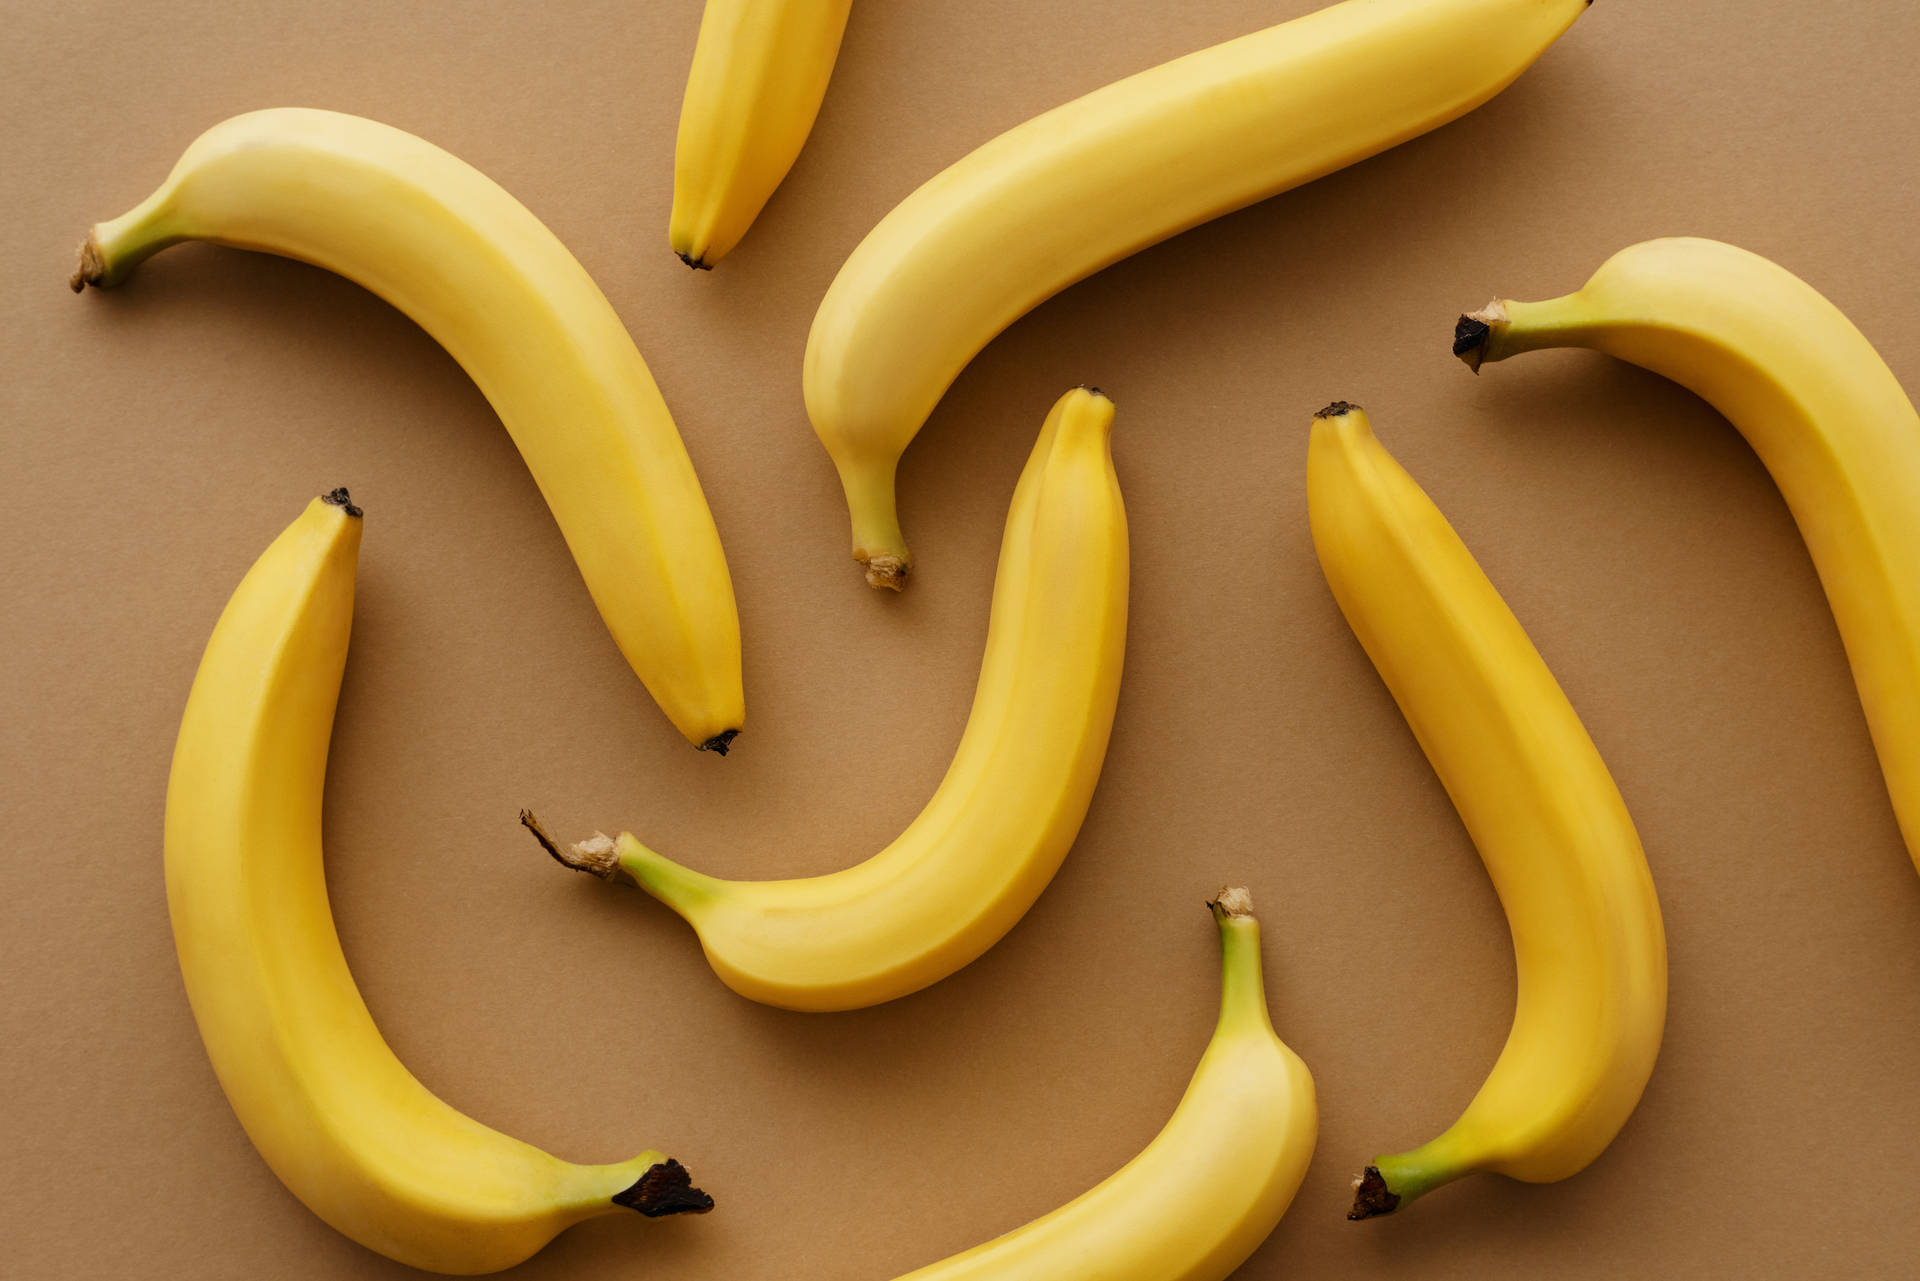 Banana Wallpaper Images